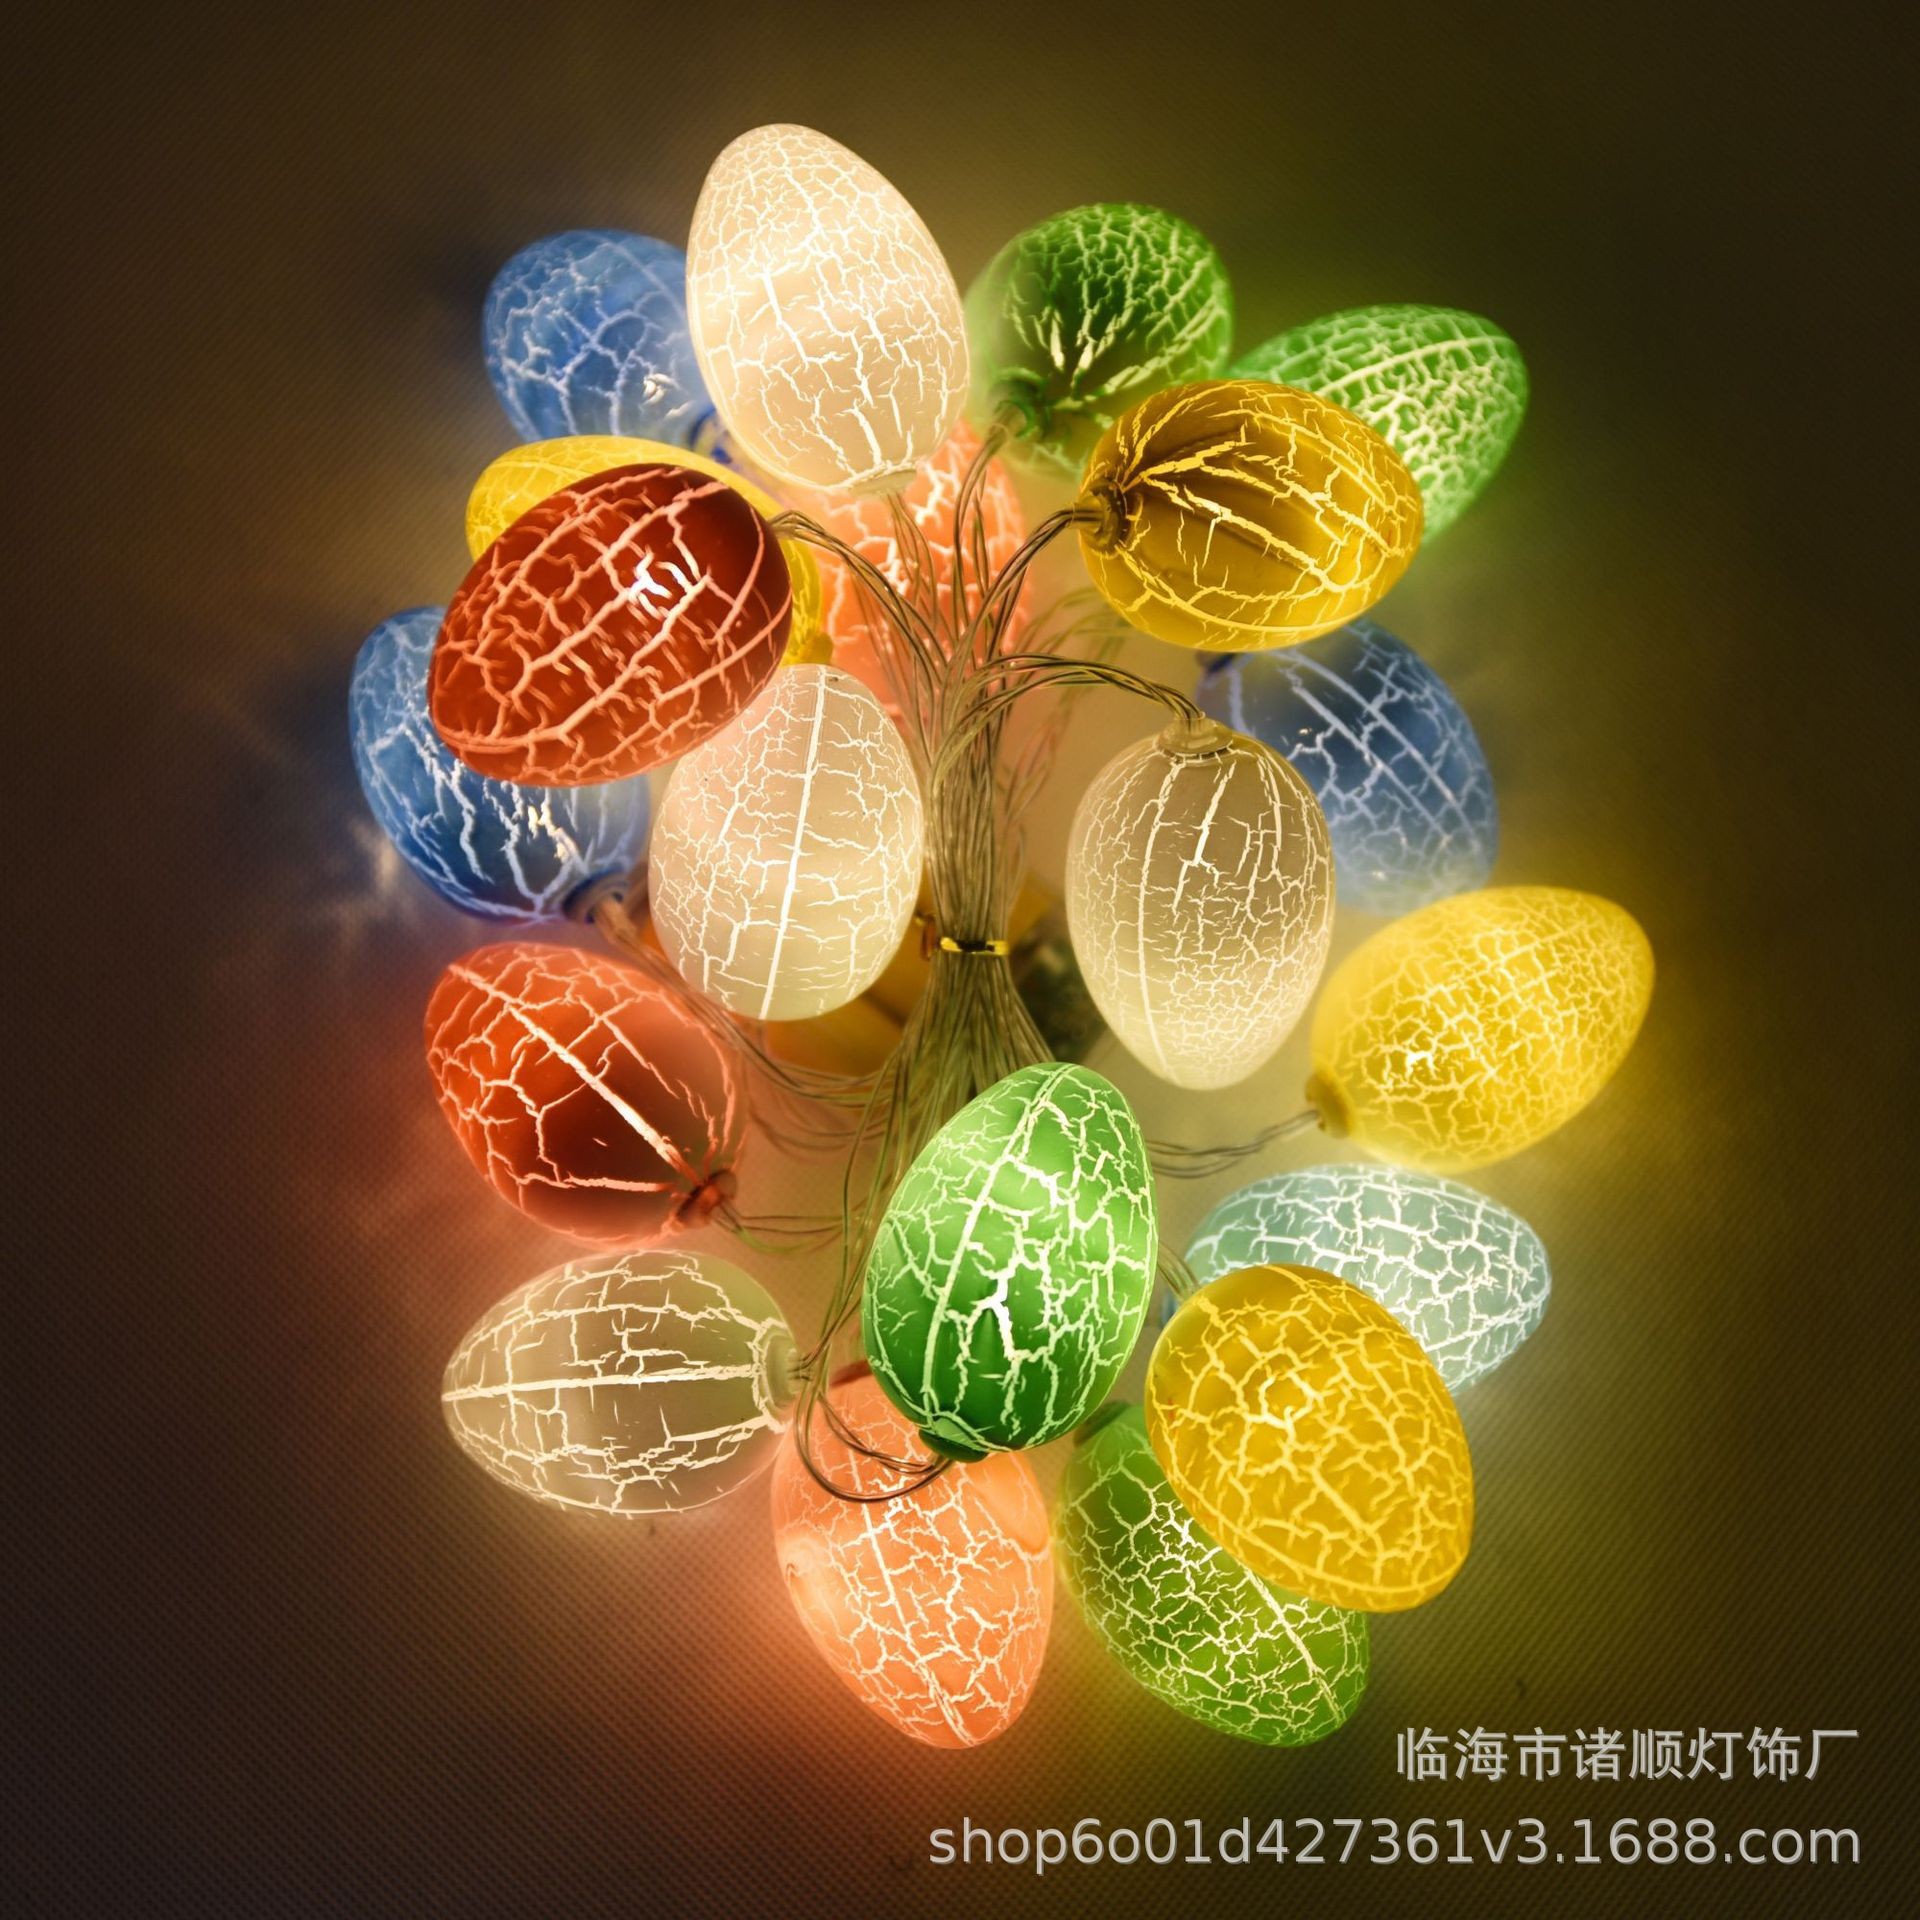 Cross-Border Multi-Color Crack Egg String Girl's Heart Festival Ornamental Festoon Lamp Easter Led Egg Lighting Chain